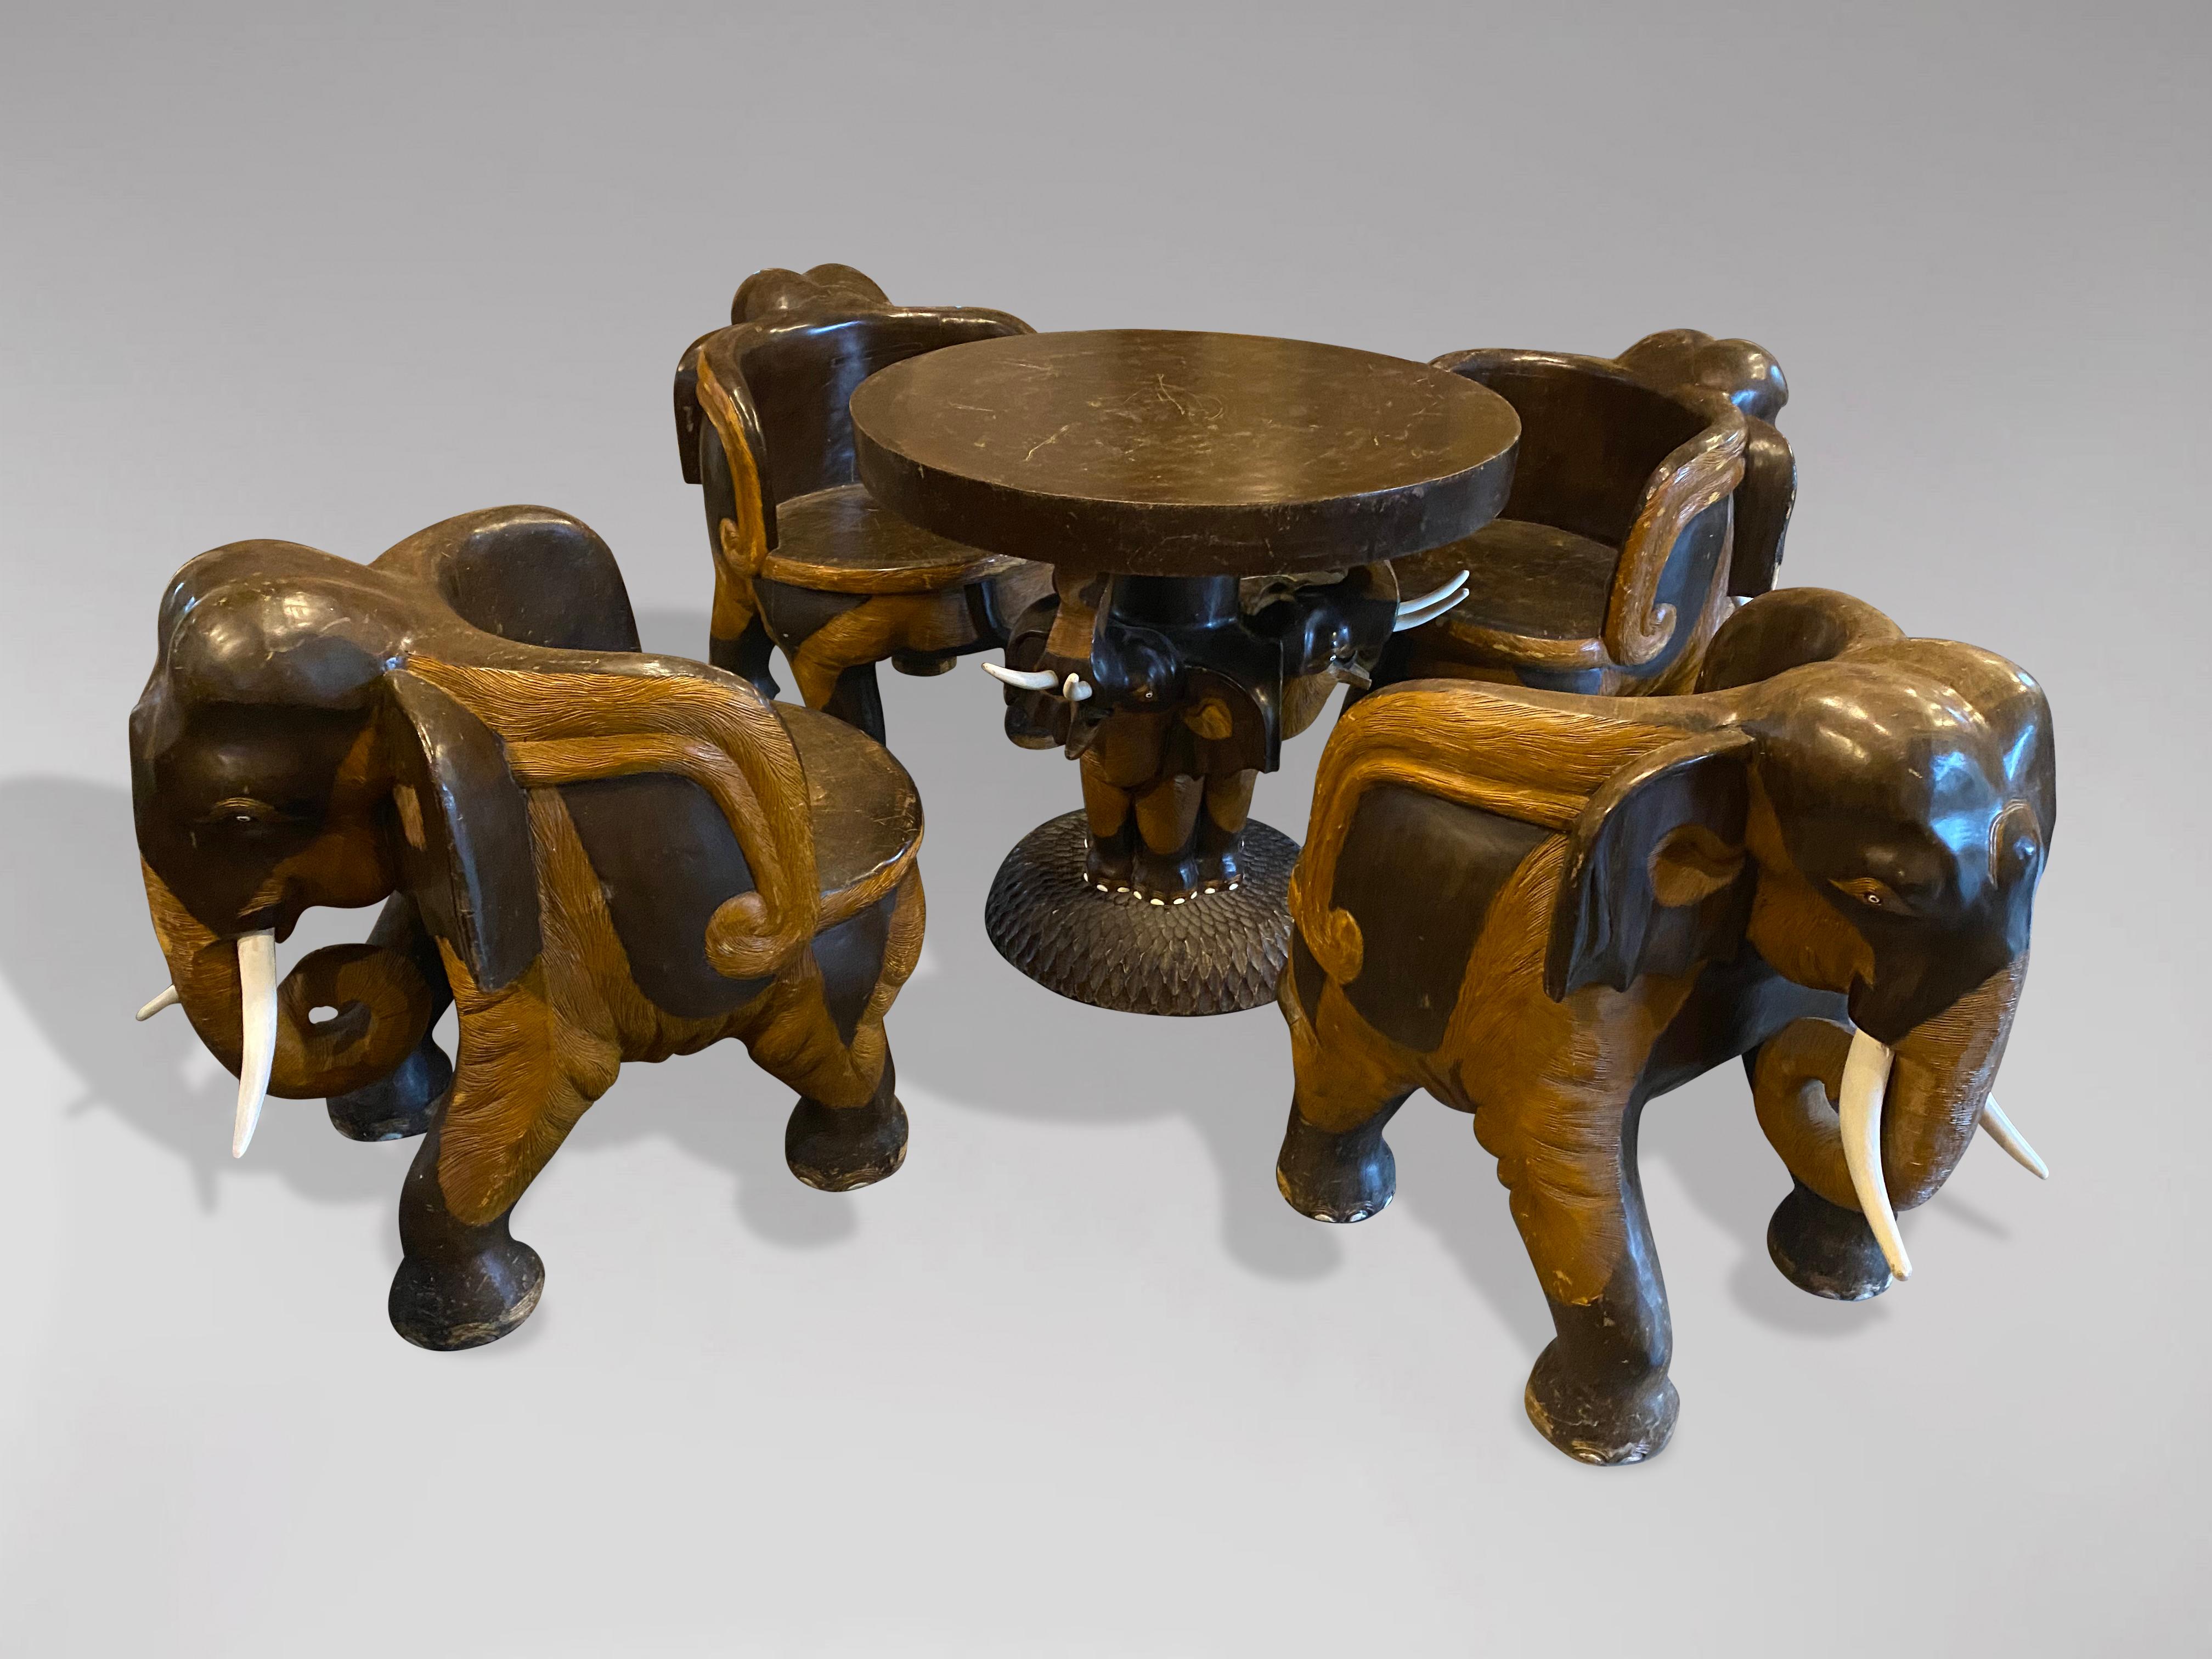 Superbe ensemble de salon en bois dur sculpté à la main, datant du milieu du 20e siècle, de style anglo-indien. Comprenant un ensemble de 4 fauteuils tubulaires et une table circulaire, sculptés à la main et modelés comme un éléphant debout. Chaque